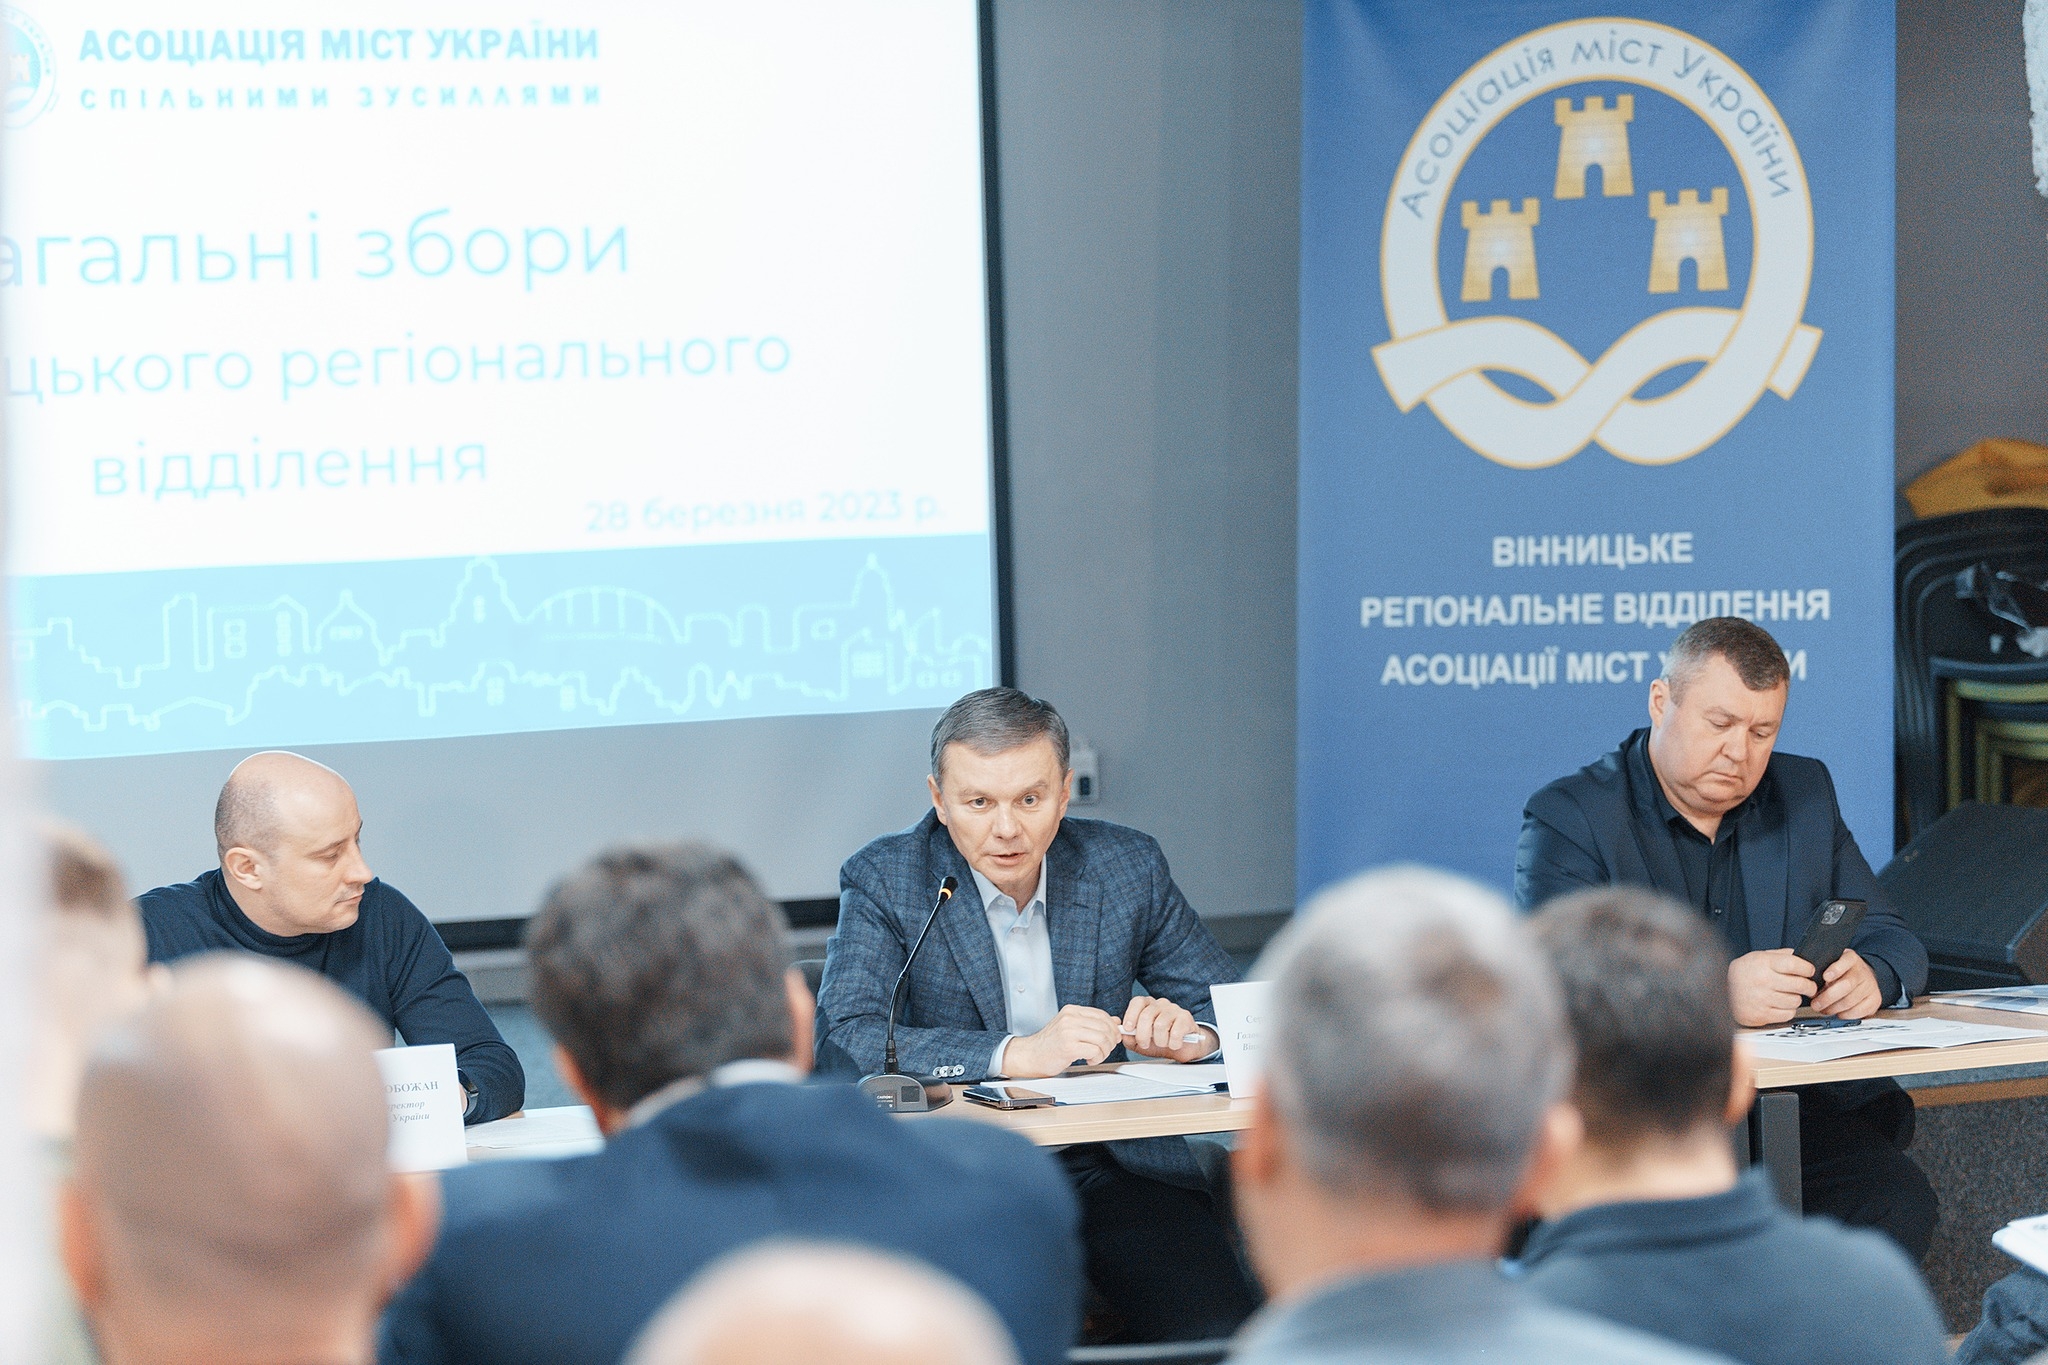 Сергій Моргунов: «Асоціація міст України консолідує зусилля для розвитку територіальних громад»